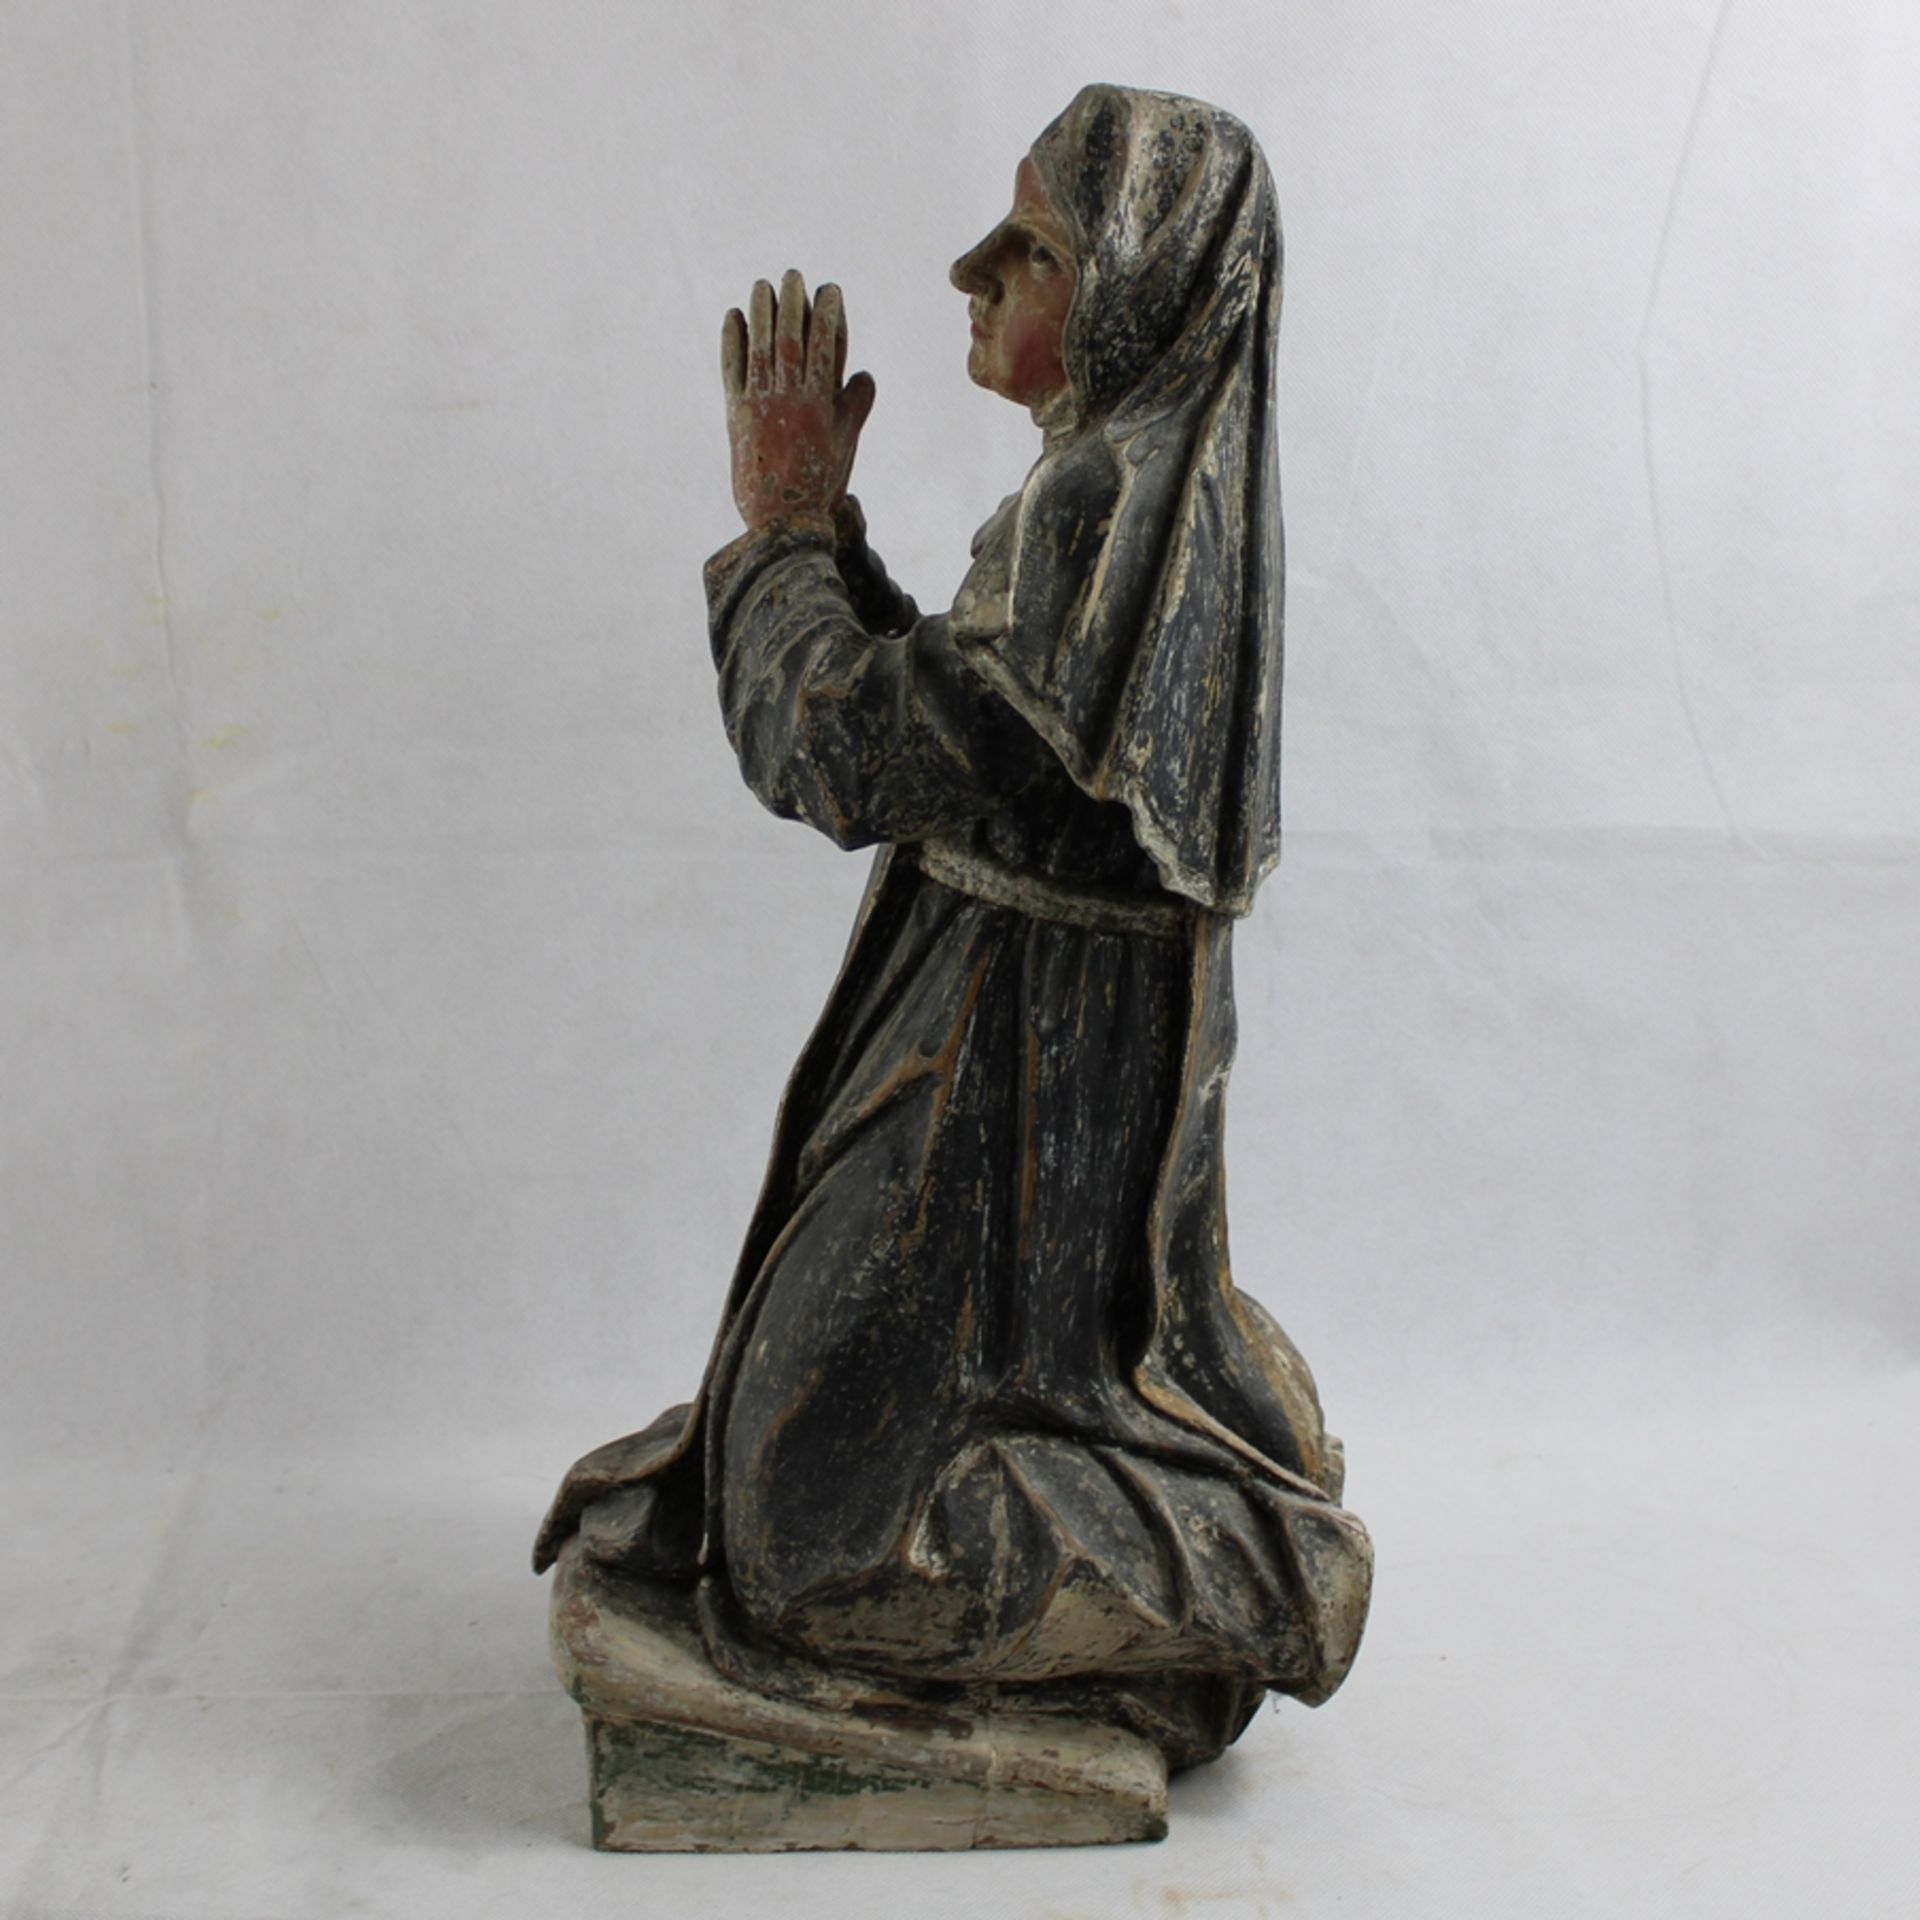 Bernadette Soubirous, Nonne knieend Holz geschnitzt u. bemalt ca. 45 cm, Altersspuren - Image 2 of 3